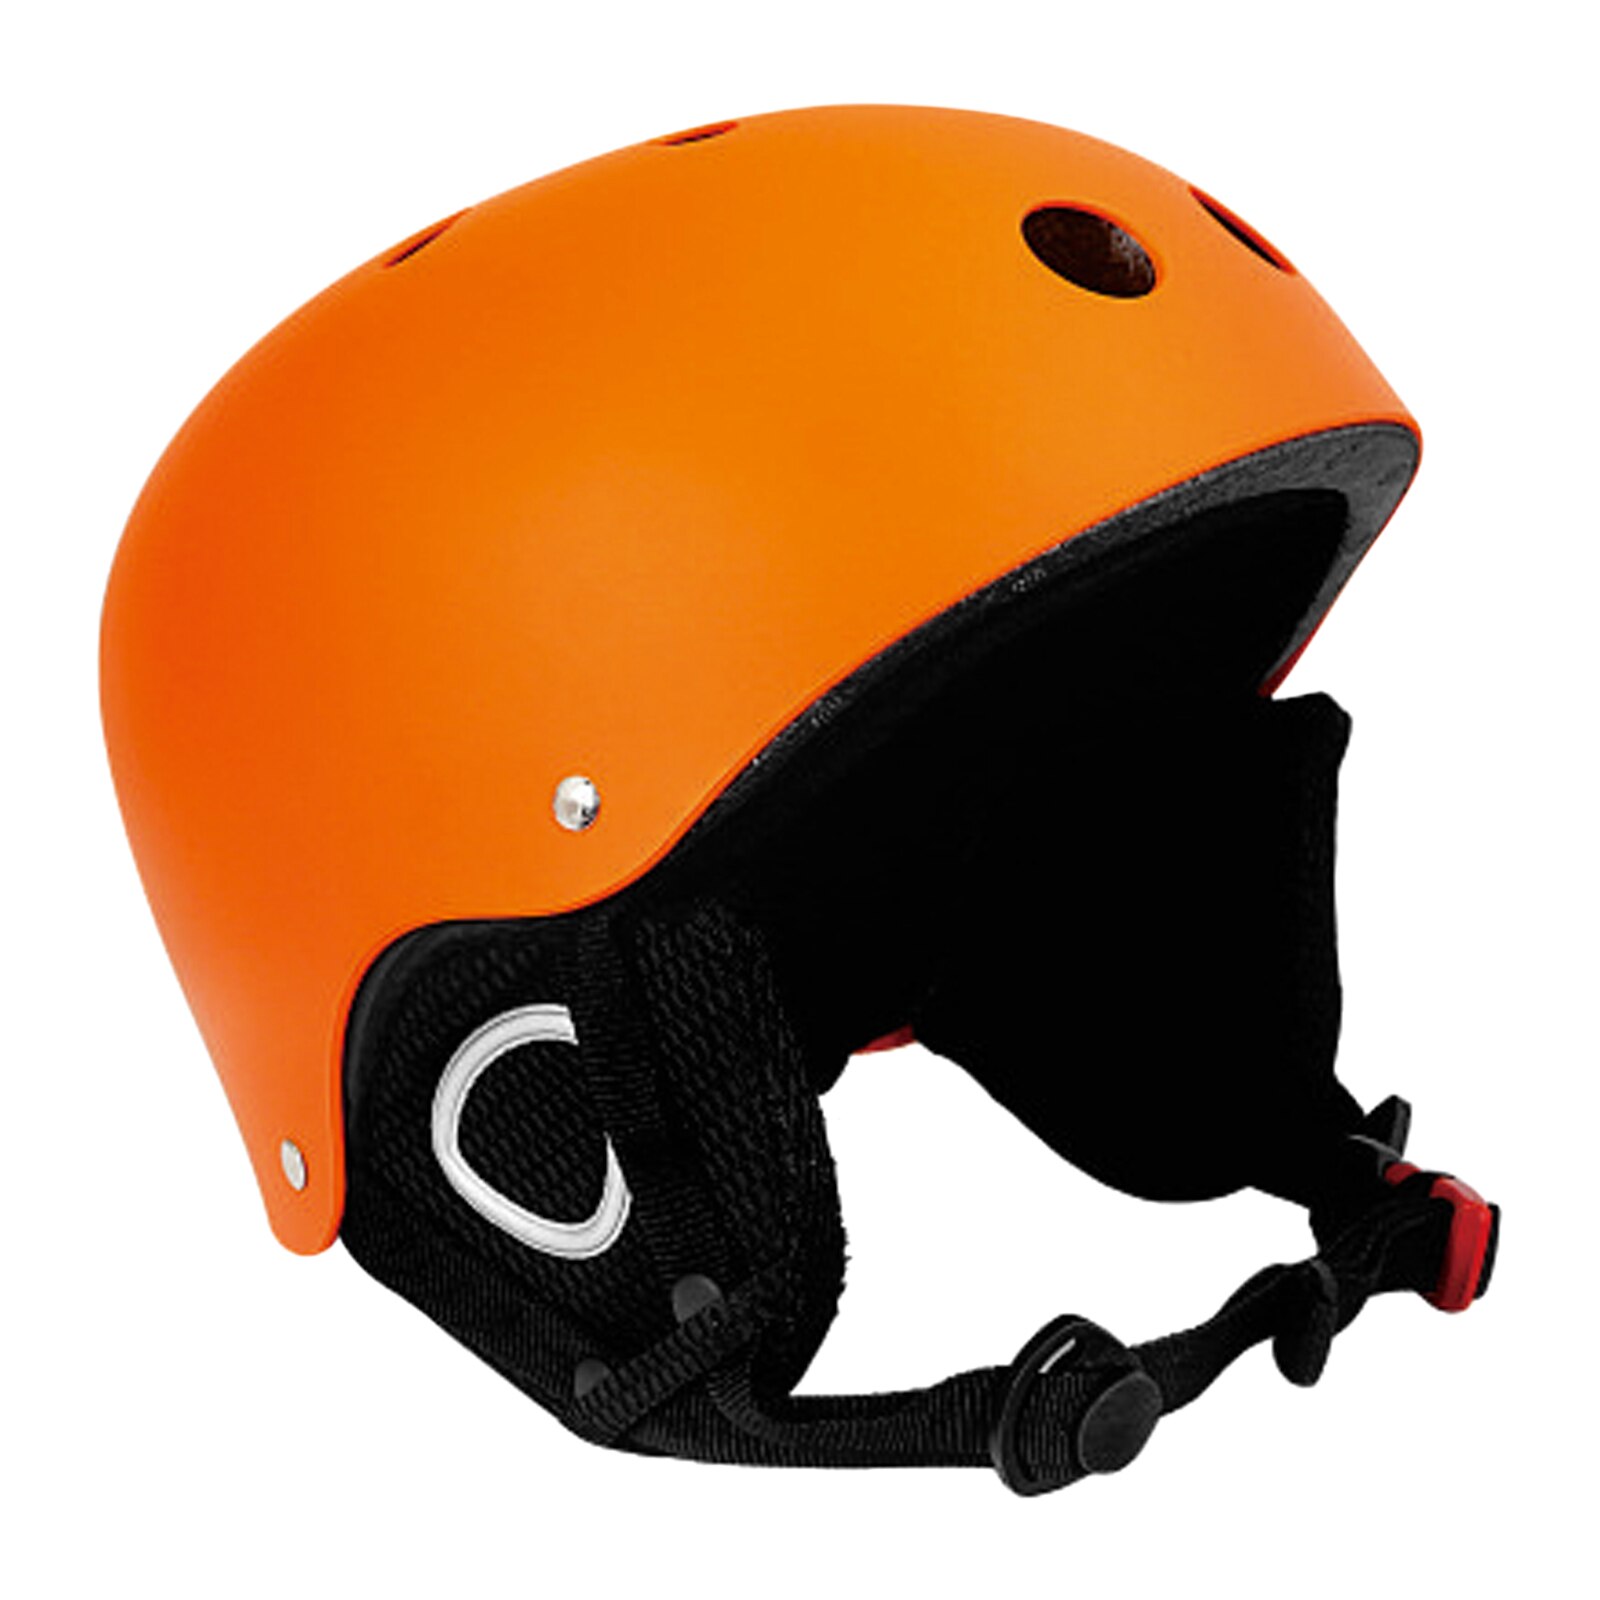 Skihjelm slagstyrke ventilation skihjelm skihjelm ultralette abs + eps ky -c007 skihjelm kid snehjelm: Orange / 50-53cm